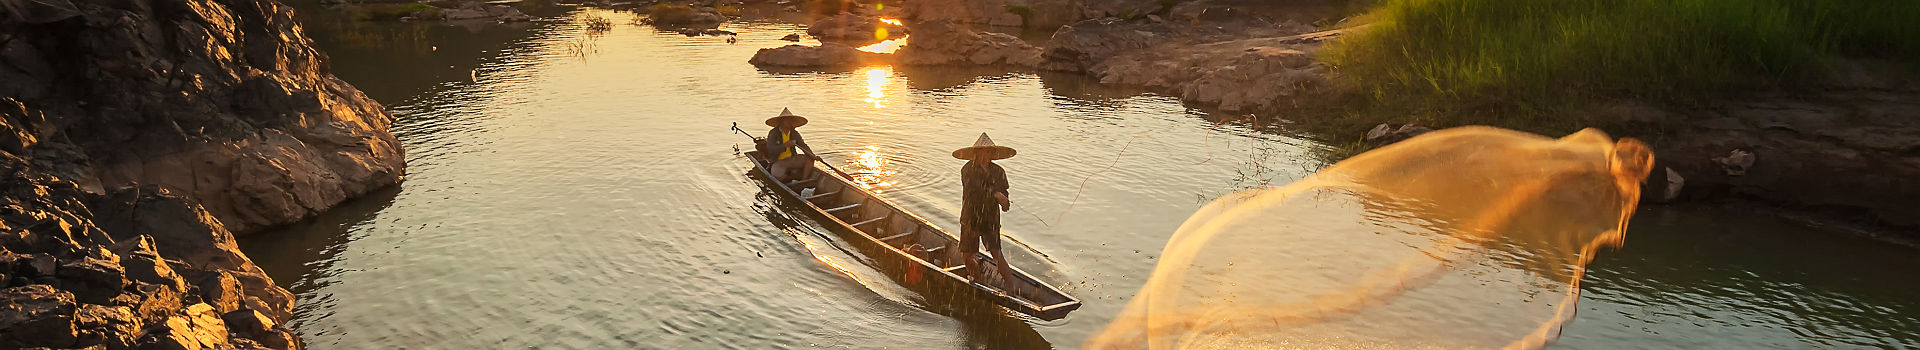 Pêcheur dans le Delta du Mekong - Vietnam